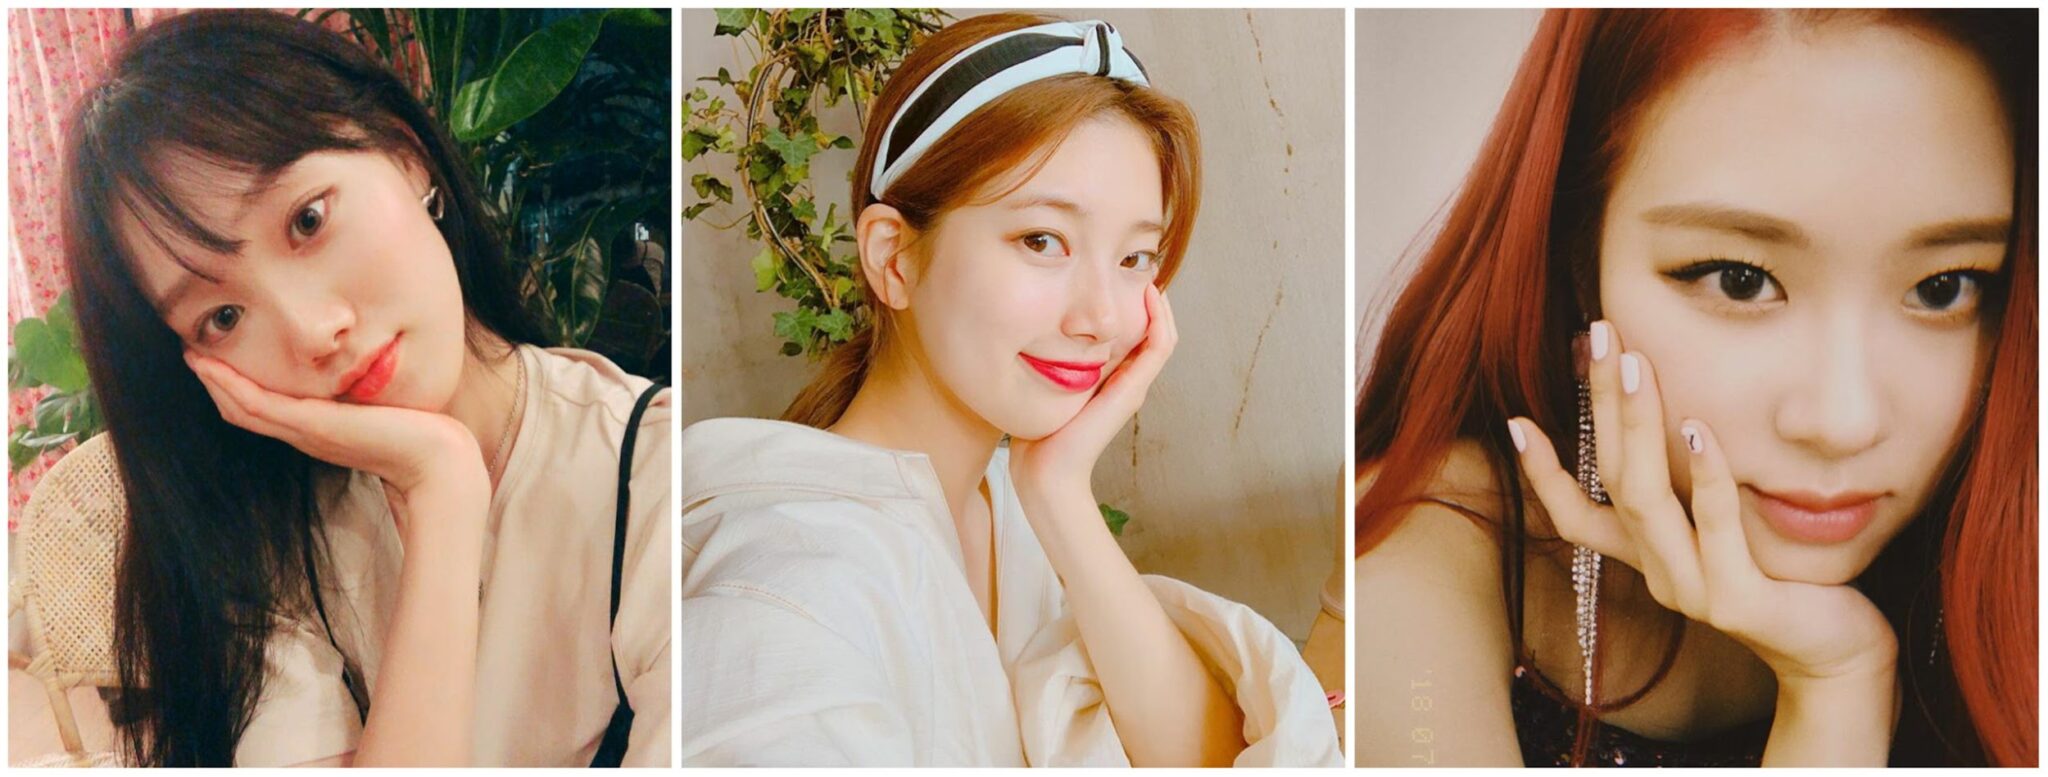 Mẹo chụp ảnh trên Instagram của Hàn Quốc - khuôn mặt người phụ nữ